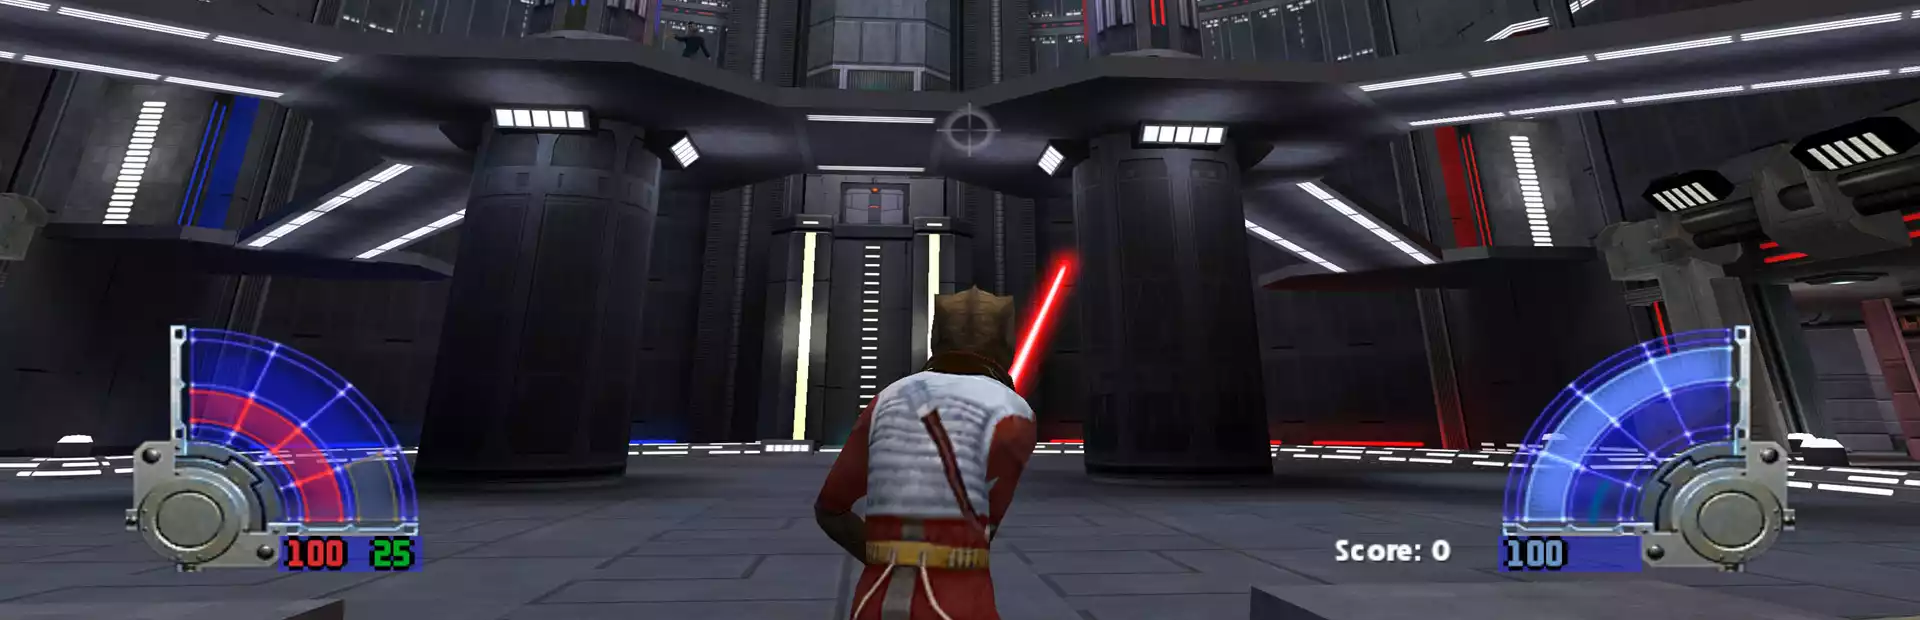 Star Wars Jedi Knight: Jedi Academy Steam Key GLOBAL